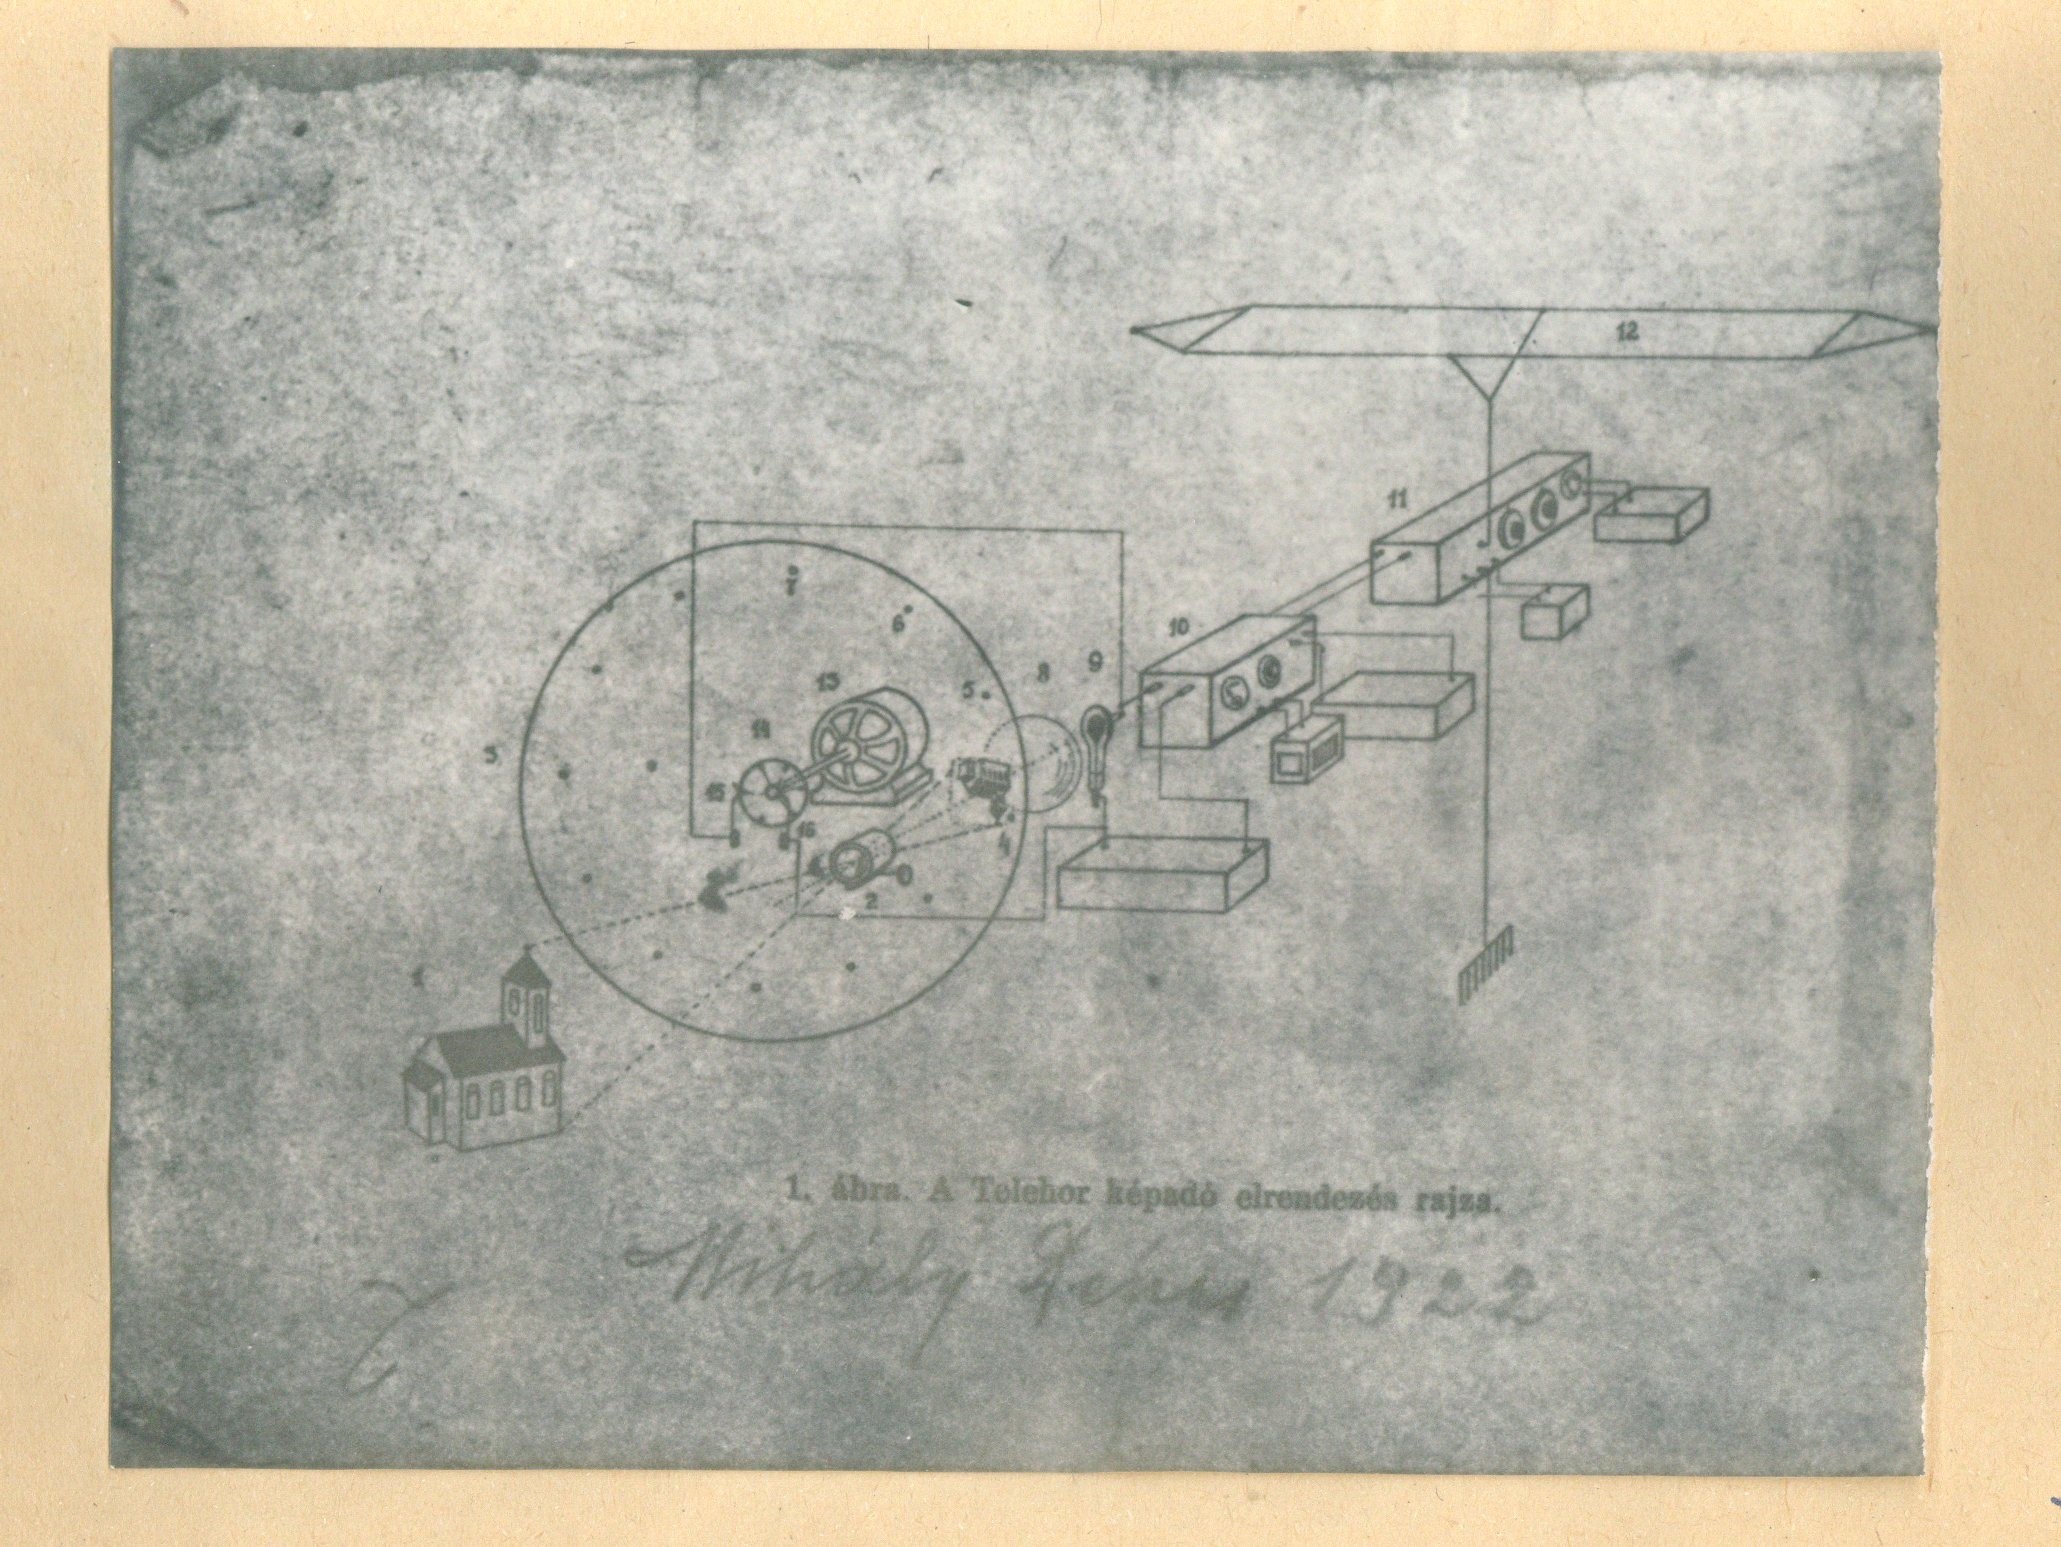 Kézirat függelék: Találmányának műszaki ábrái (Postamúzeum CC BY-NC-SA)